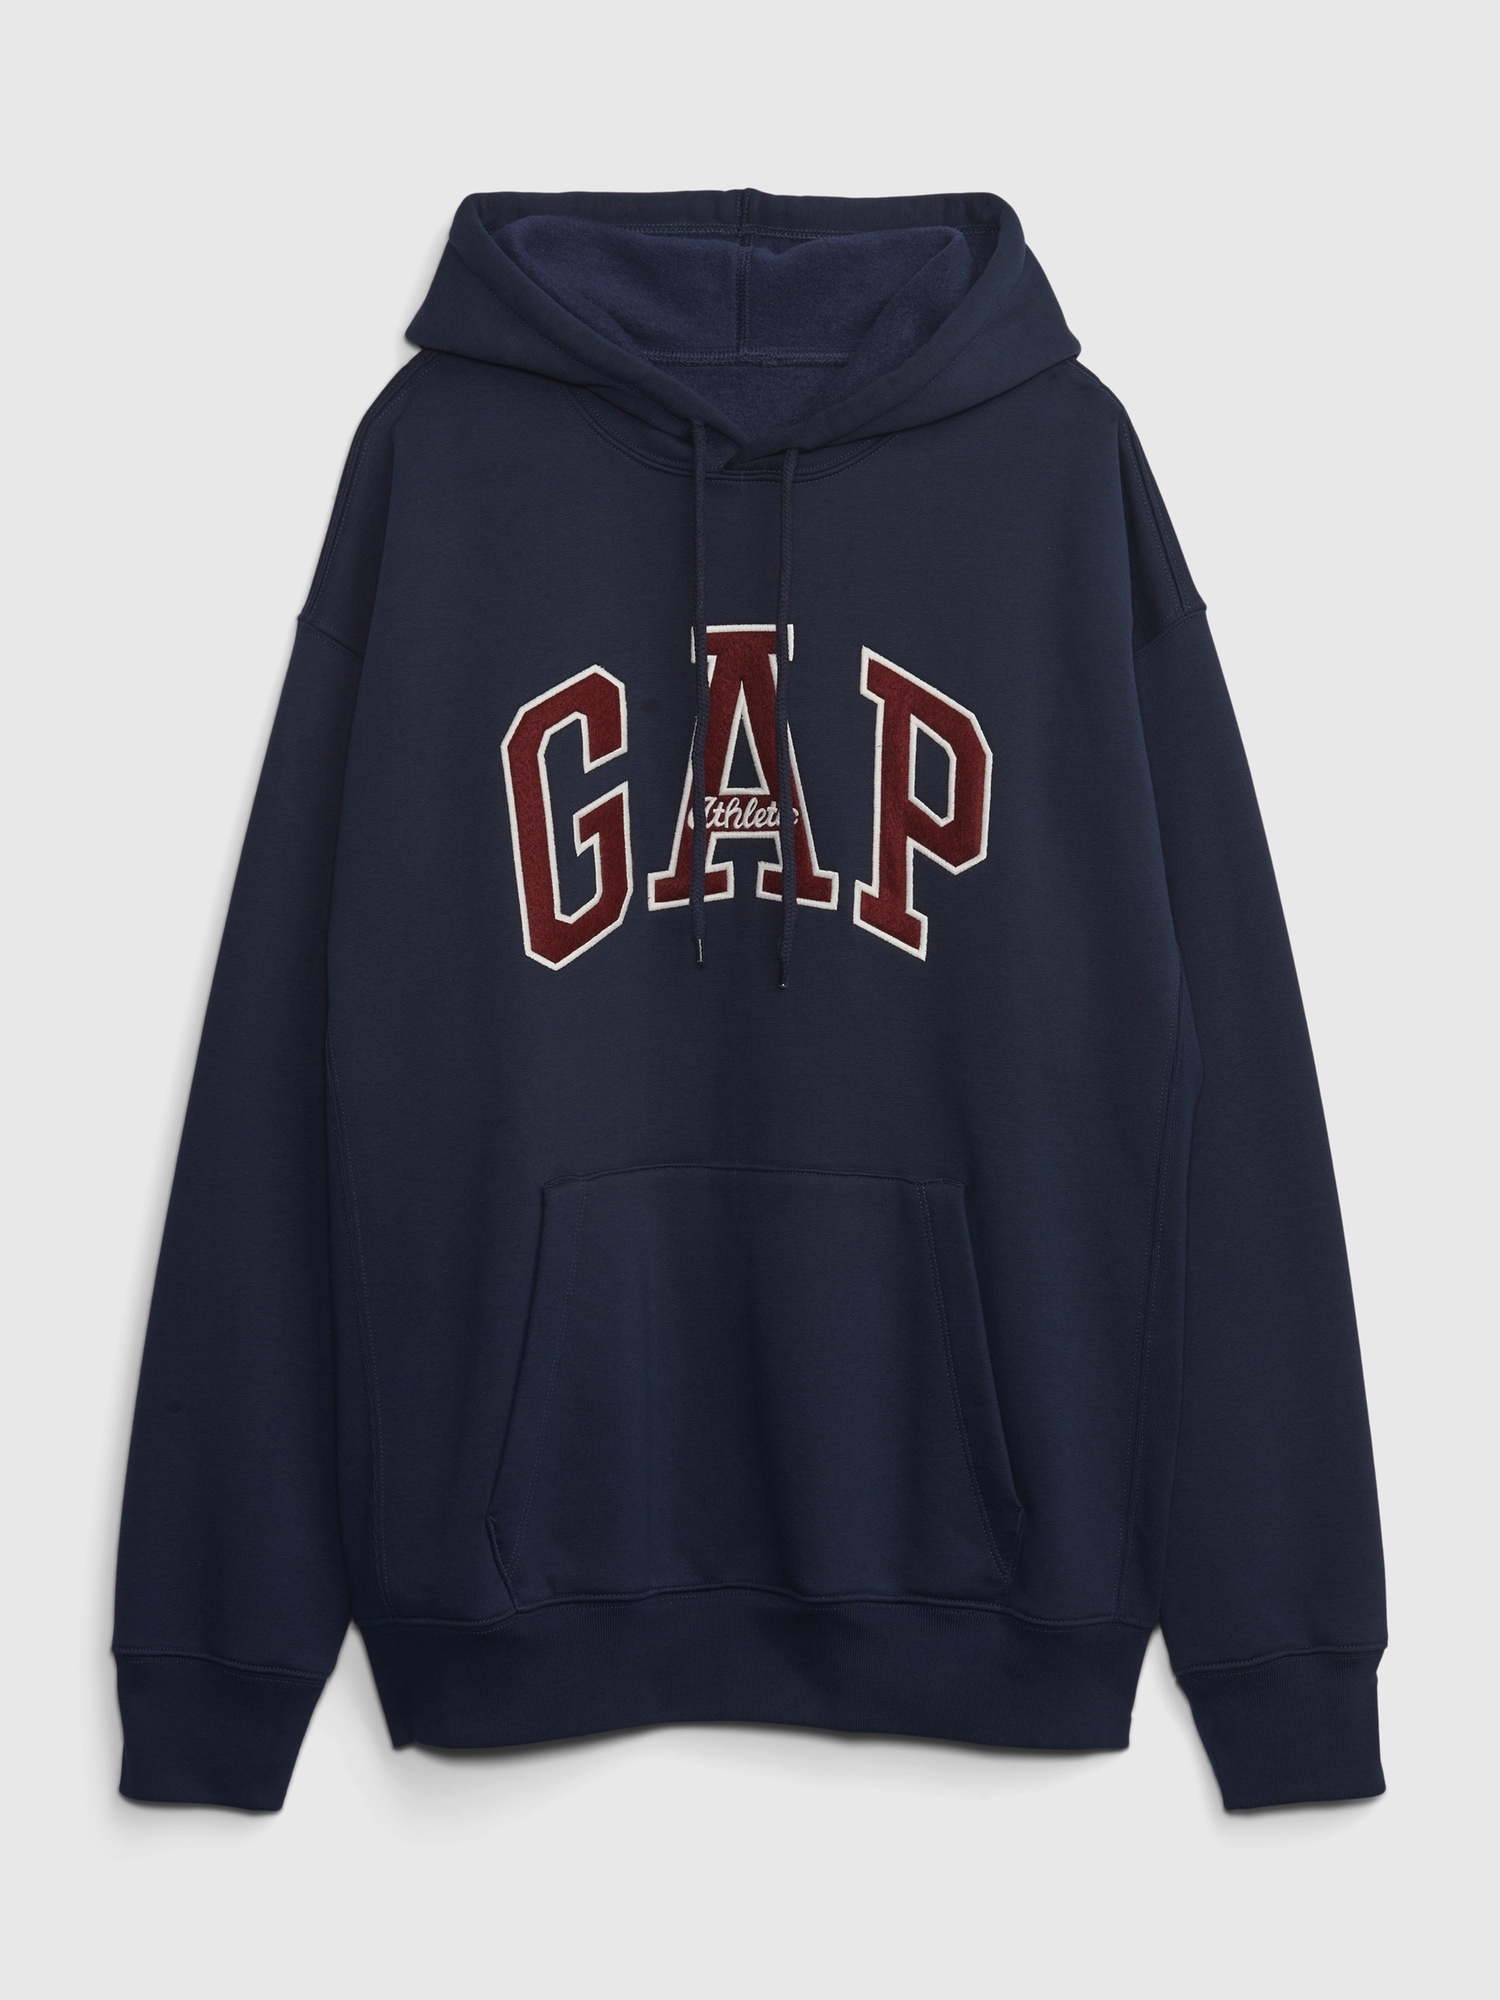 Gap公式オンラインストア | アーカイブ リイシュー GAPアーチロゴ ...